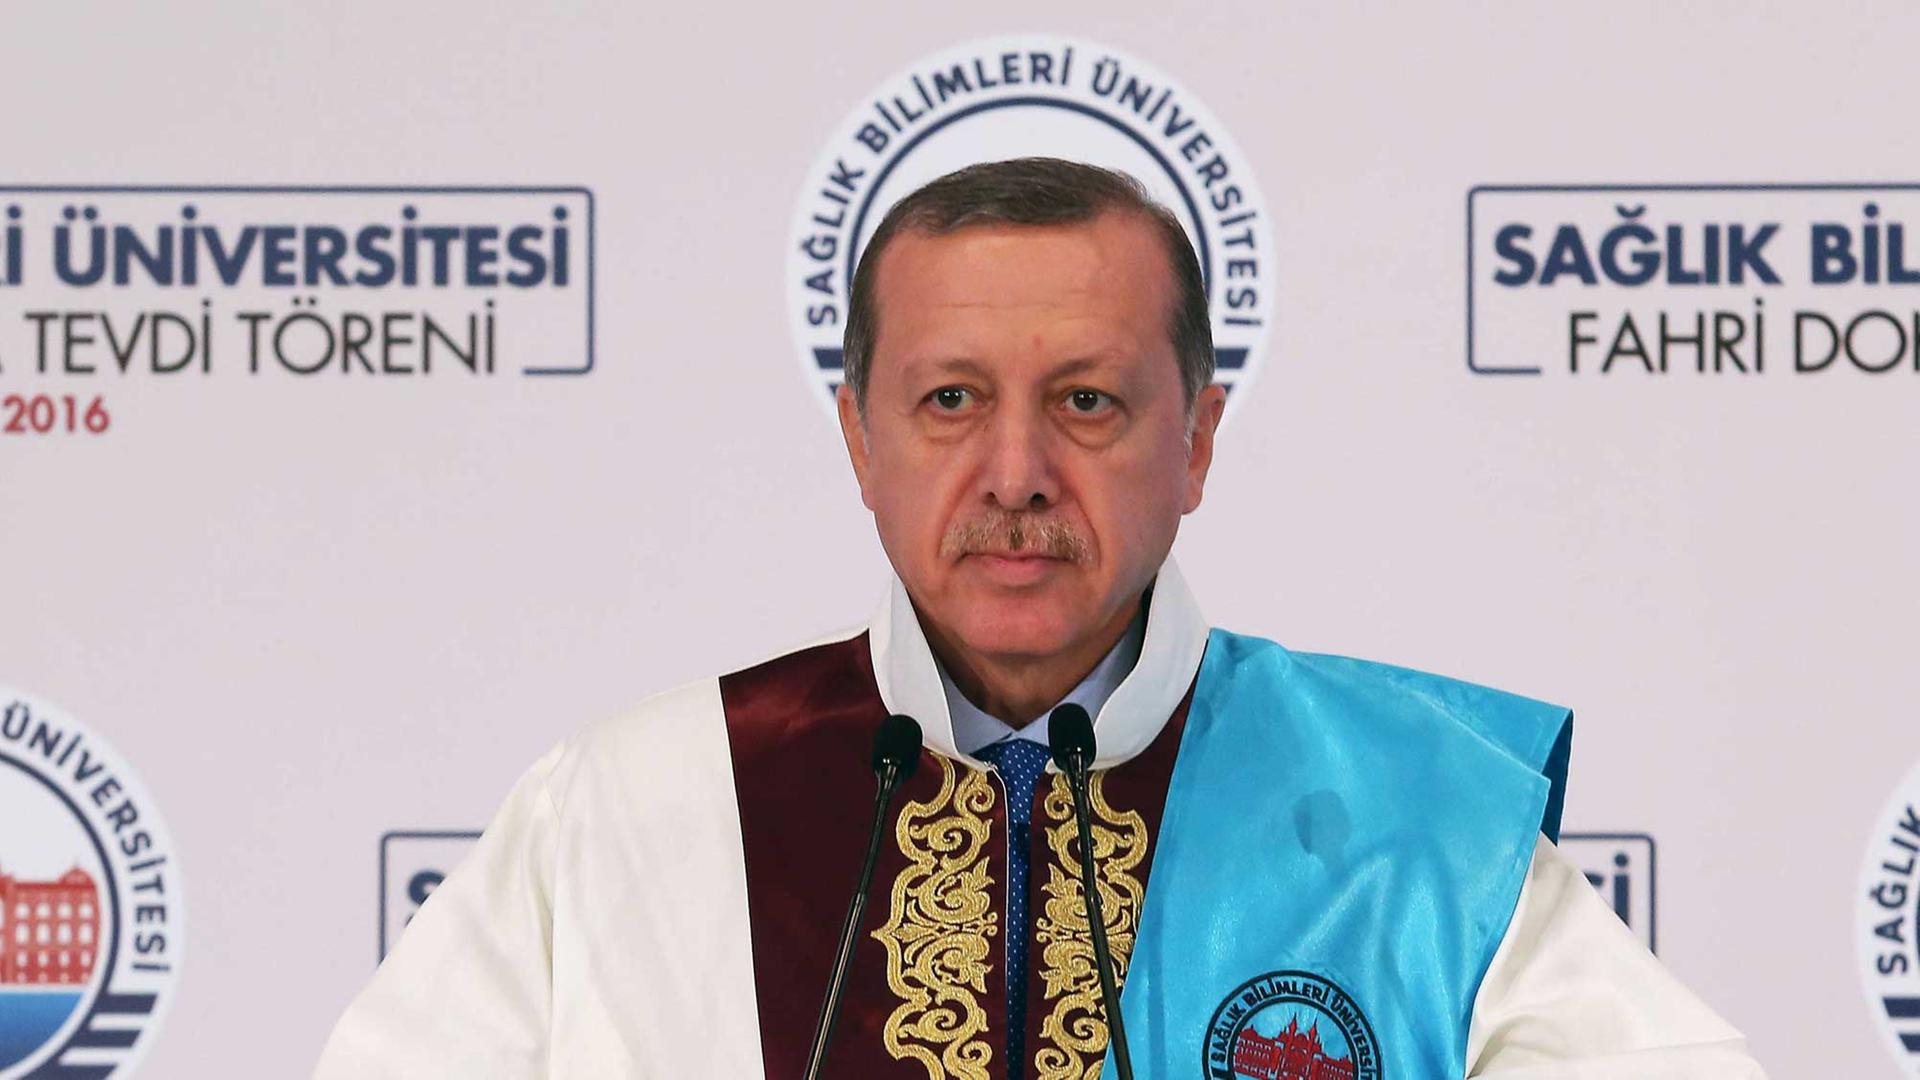 Der türkische Präsident Recep Tayyip Erdogan hält eine Ansprache anlässlich der Verleihung der Ehrendoktorwürde der University of Health Sciences in Istanbul am 6.11.2016.